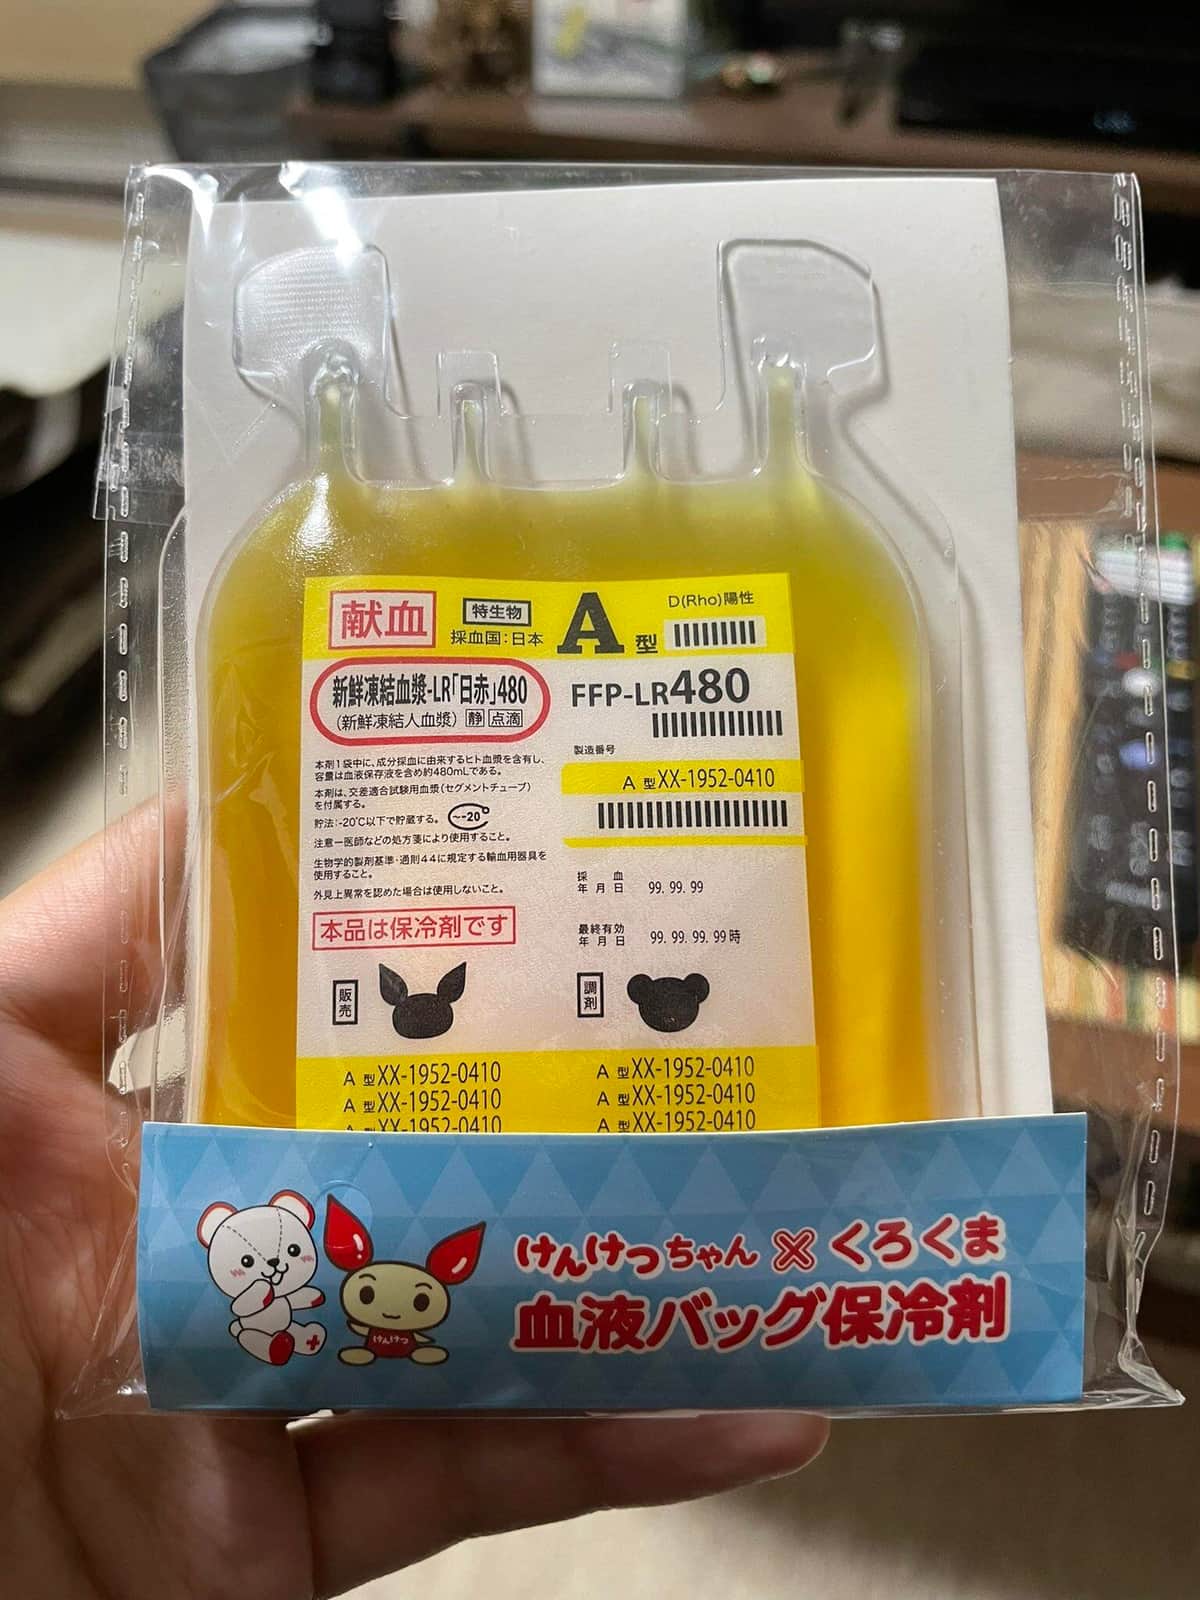 本物そっくり「血液バッグ型保冷剤」に注目　献血記念品に新登場...日本赤十字社に詳細聞いた